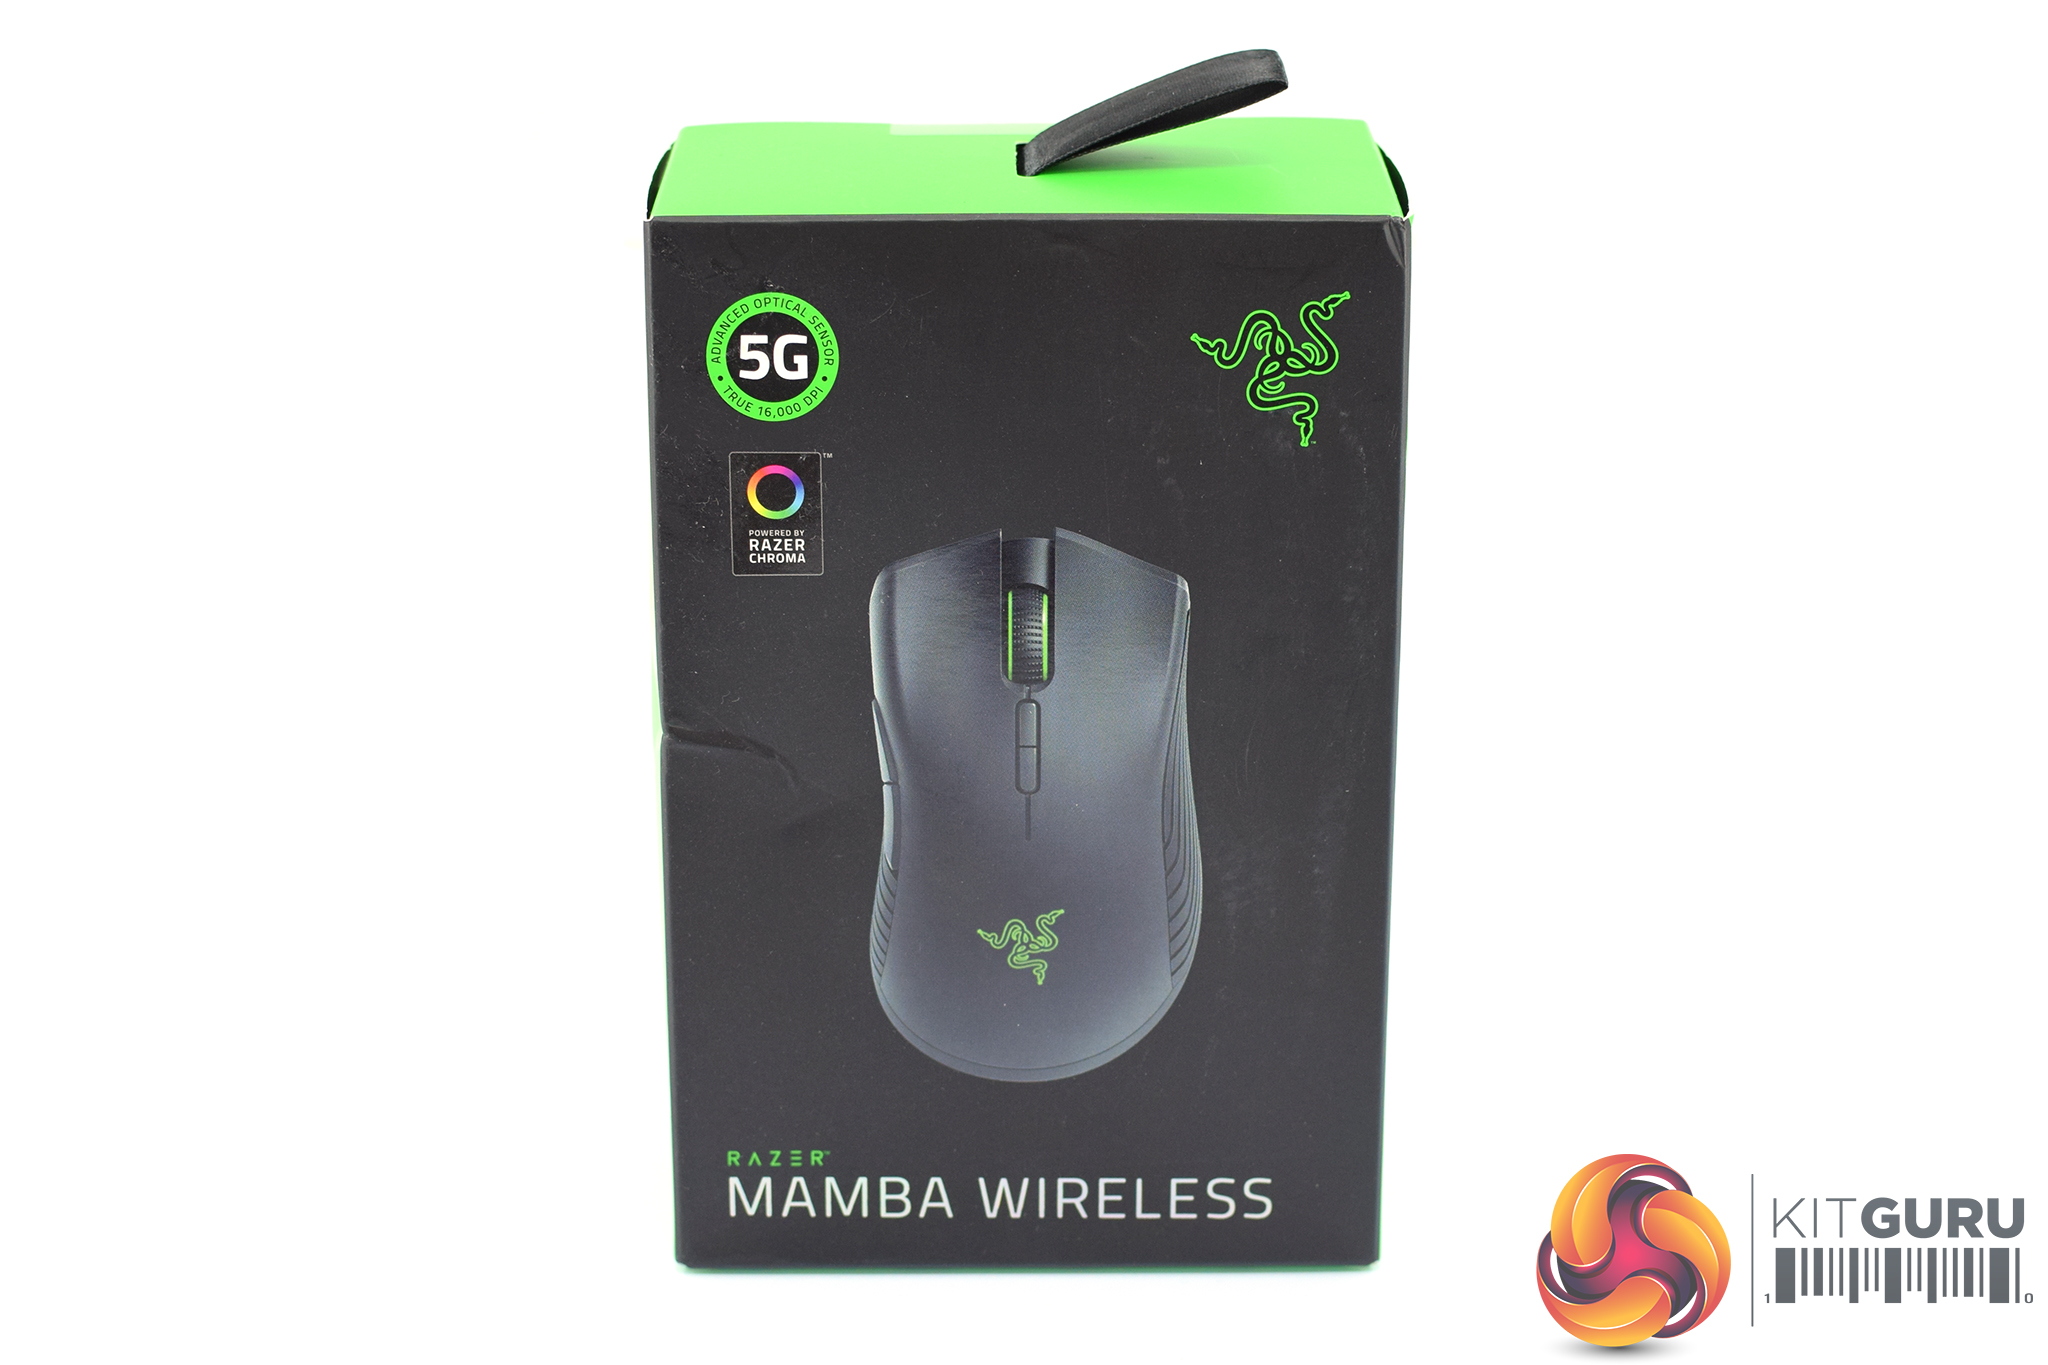 Razer Mamba Wireless (2018) Mouse Review | KitGuru- Part 2